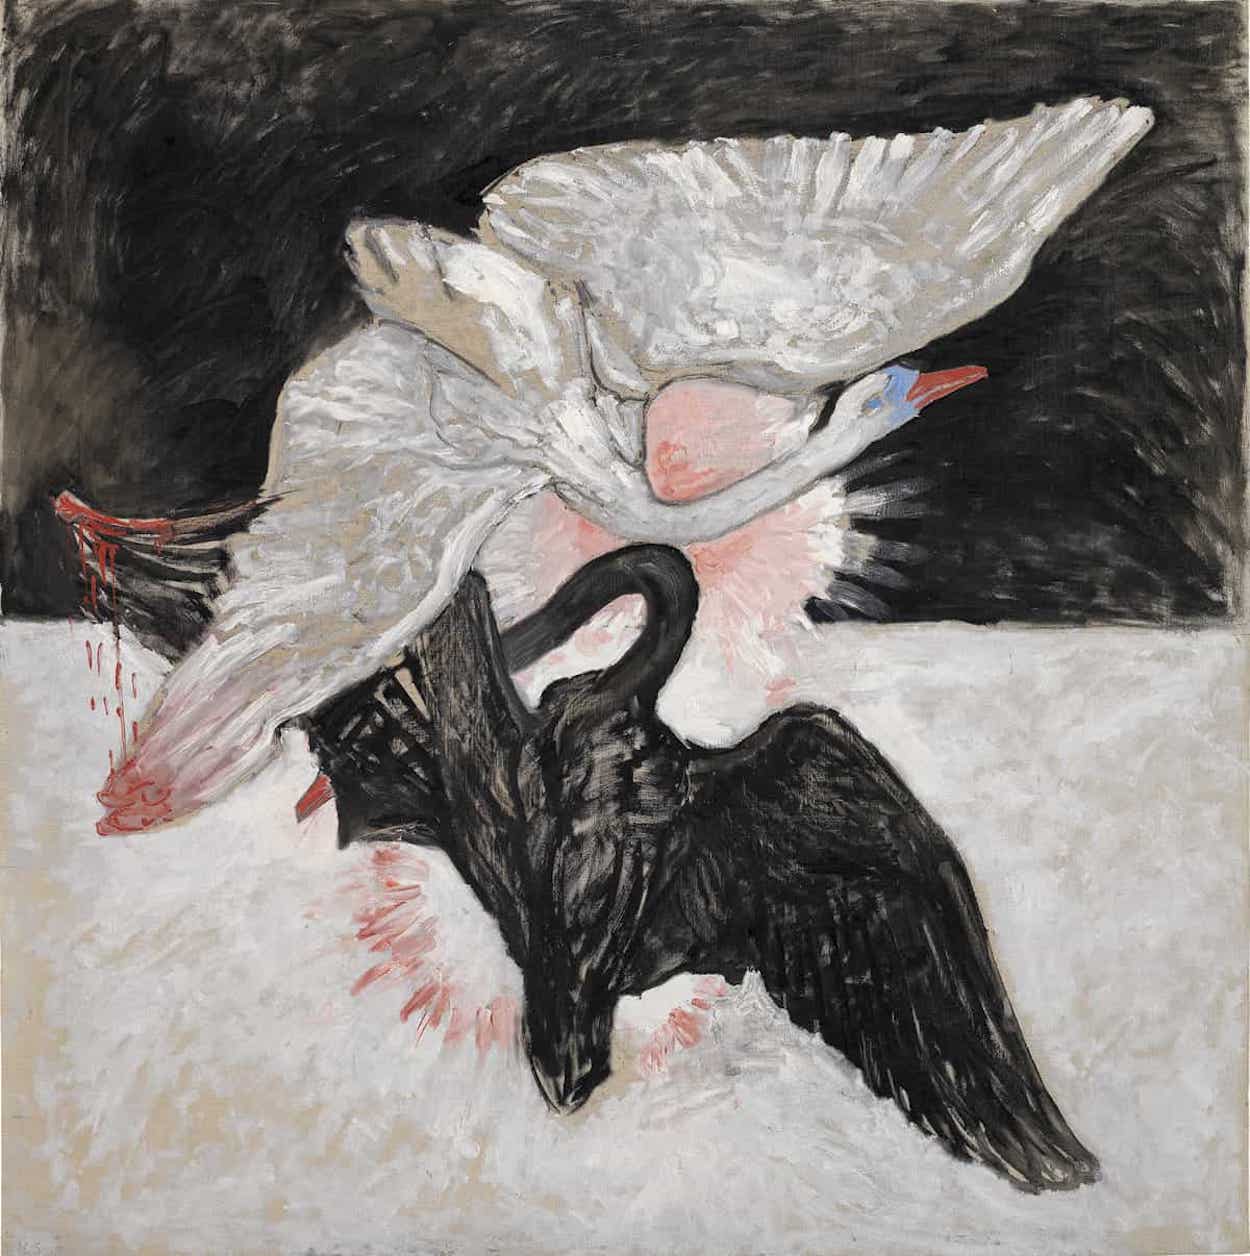 Group IX/SUW, The Swan, No. 6 by Hilma af Klint - 1915 - 153 x 153 cm The Hilma af Klint Foundation